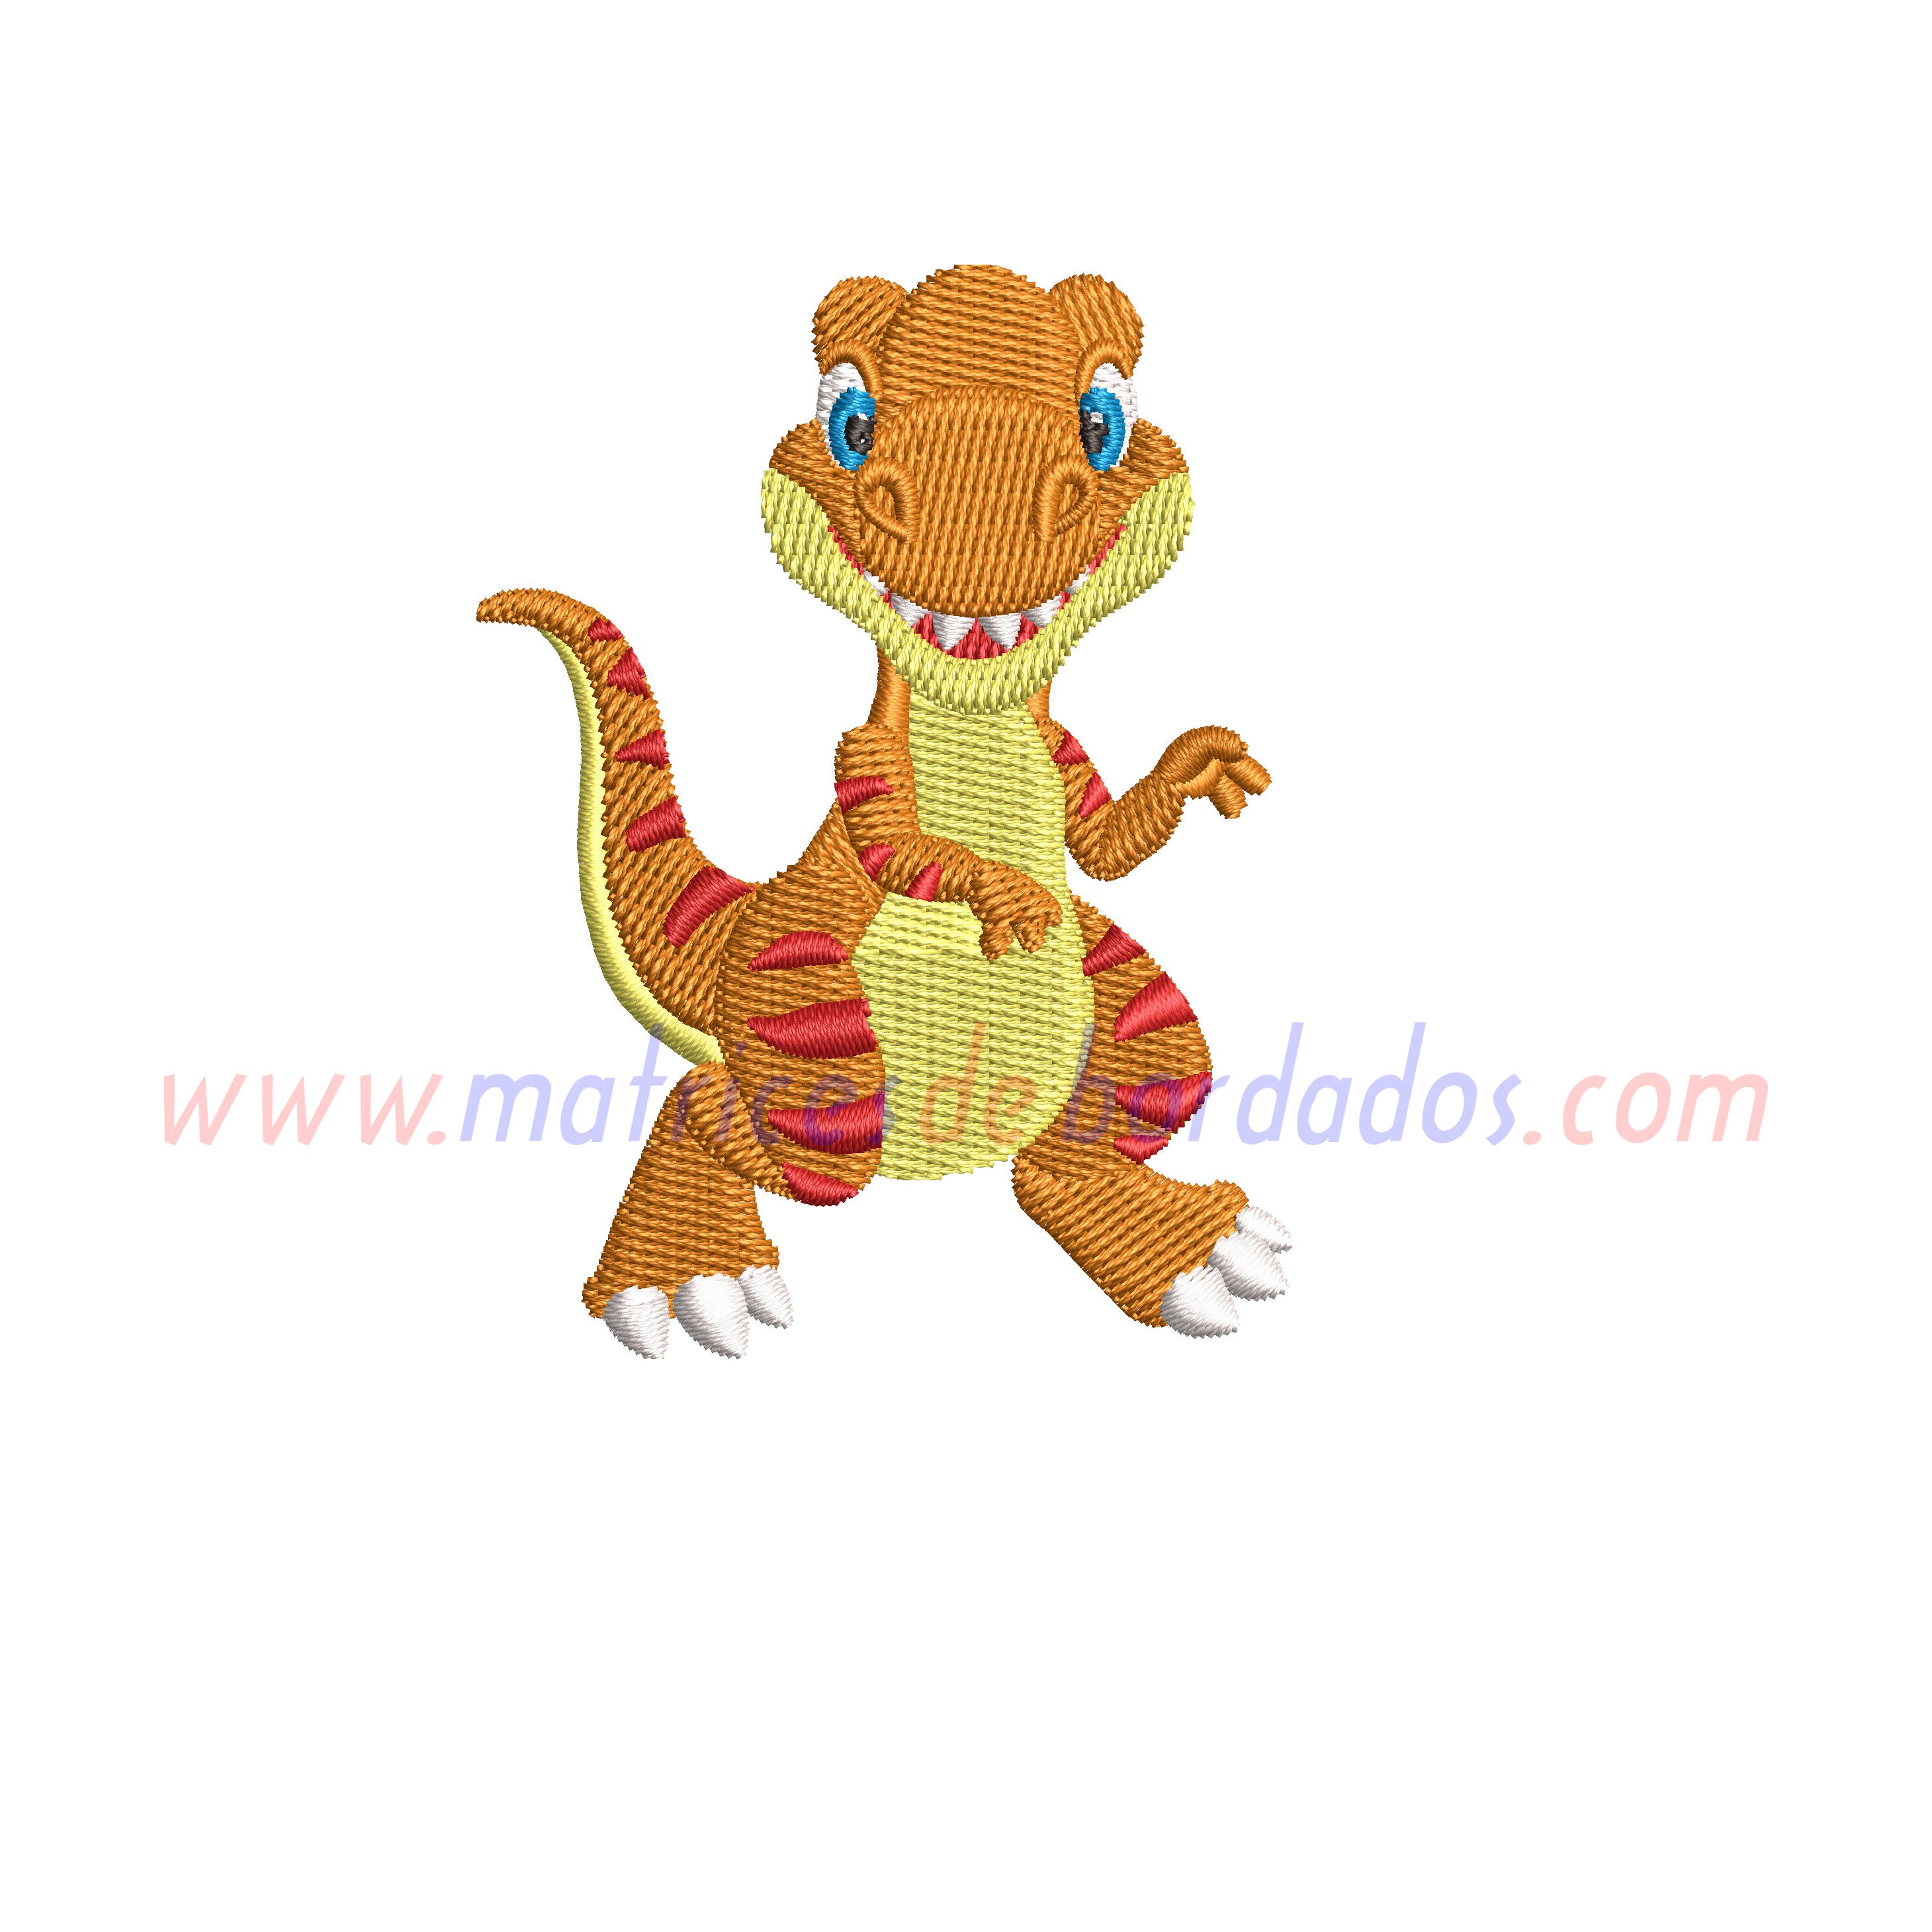 PP27MU - Dinosaurio